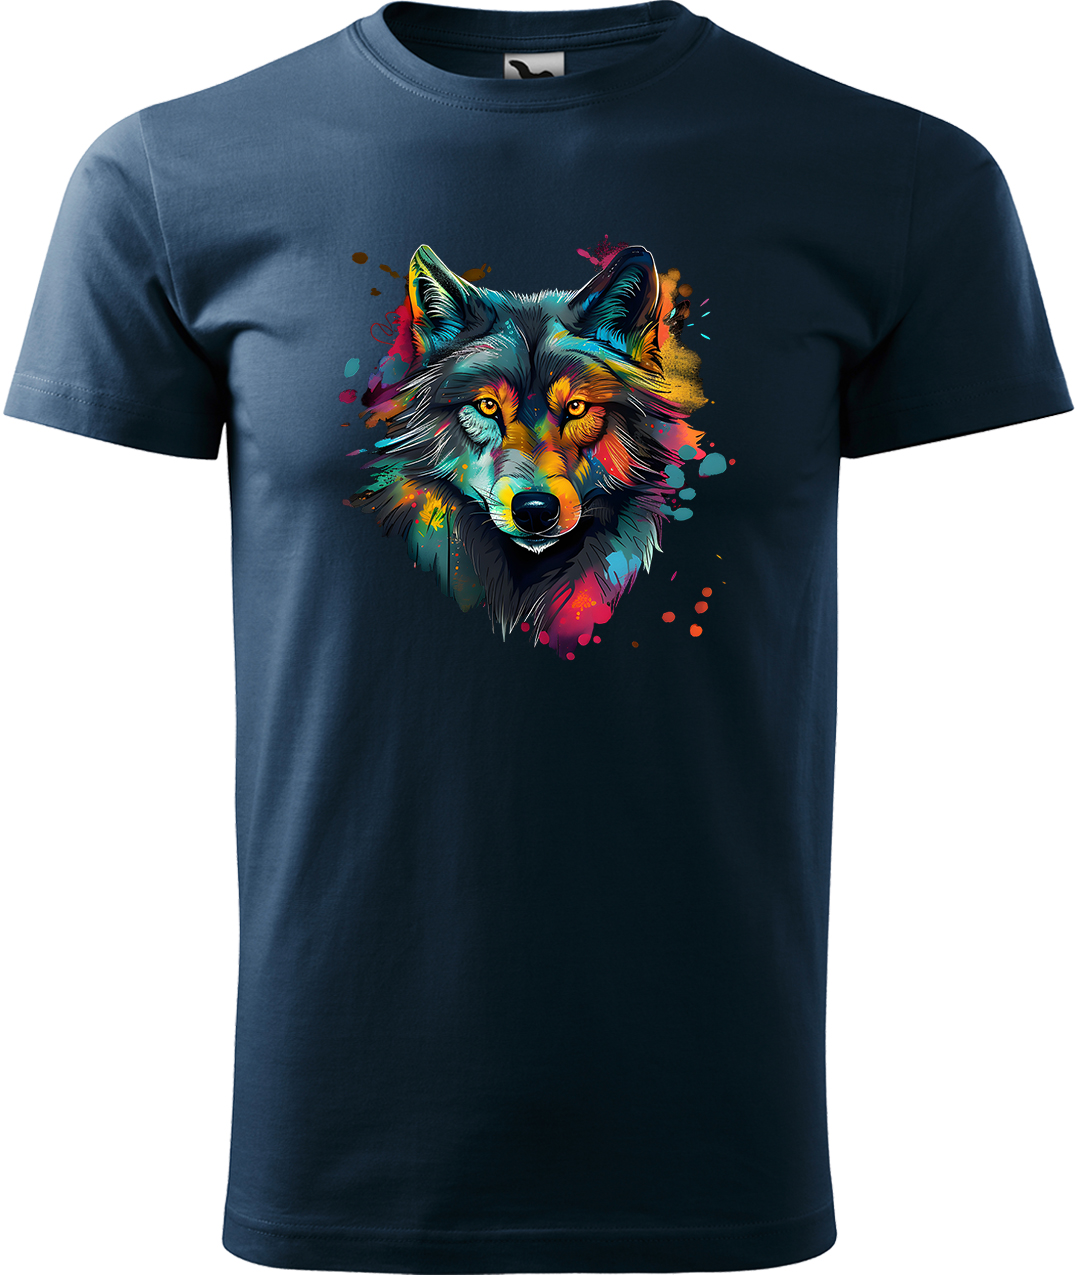 Pánské tričko s vlkem - Malovaný vlk Velikost: L, Barva: Námořní modrá (02), Střih: pánský